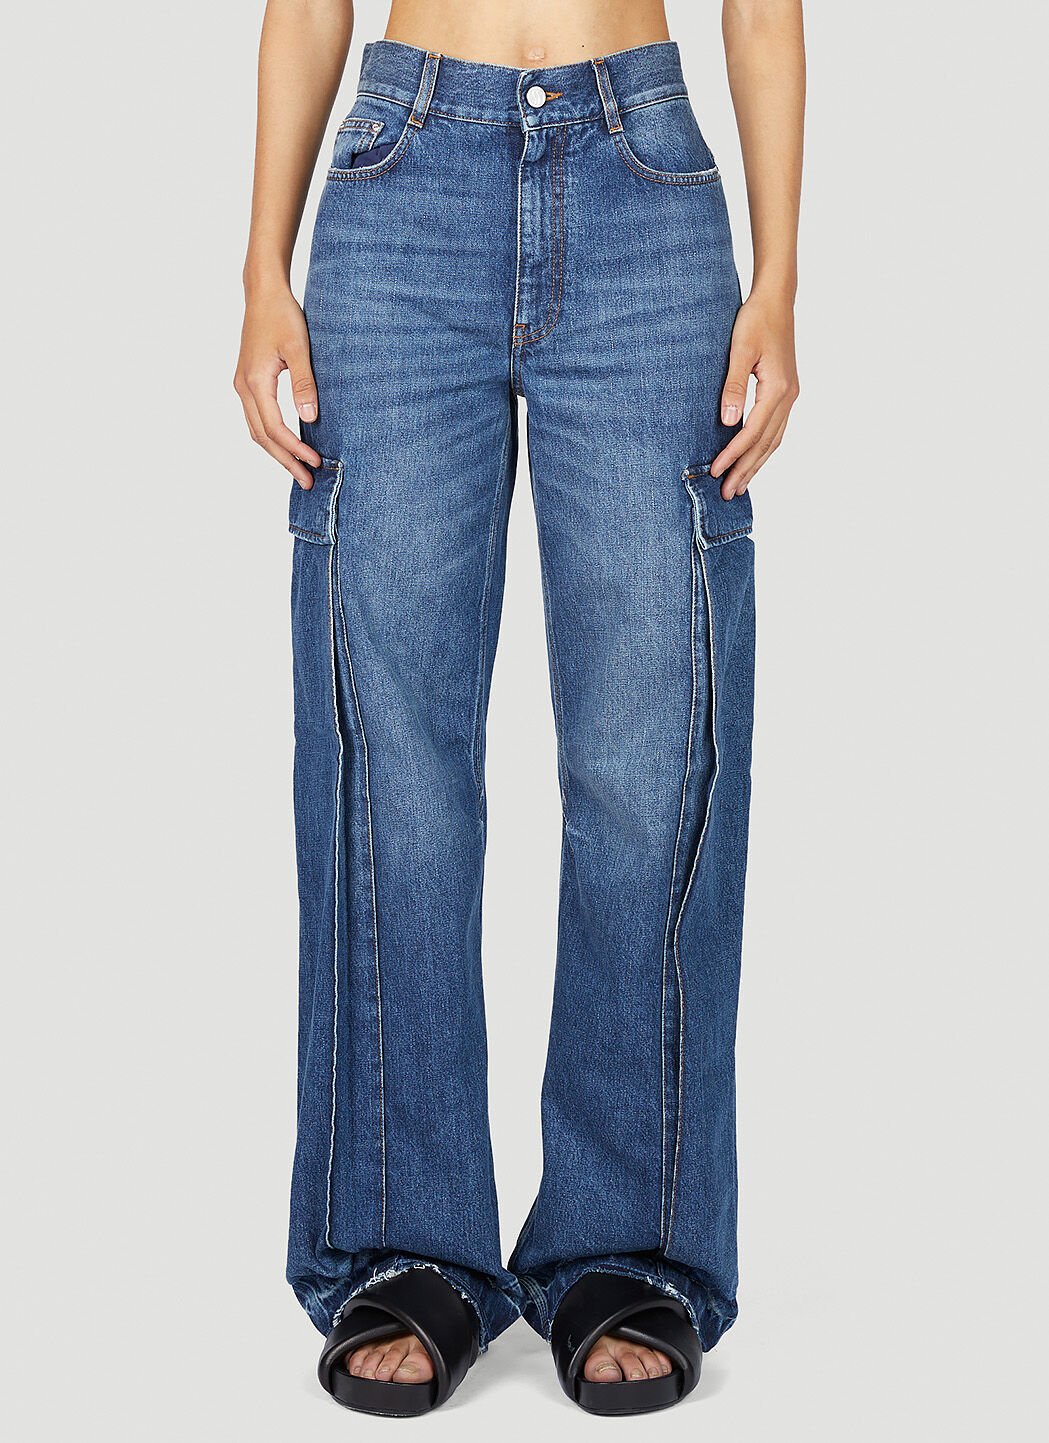 Blumarine Cargo Pocket Jeans Pink blm0252039